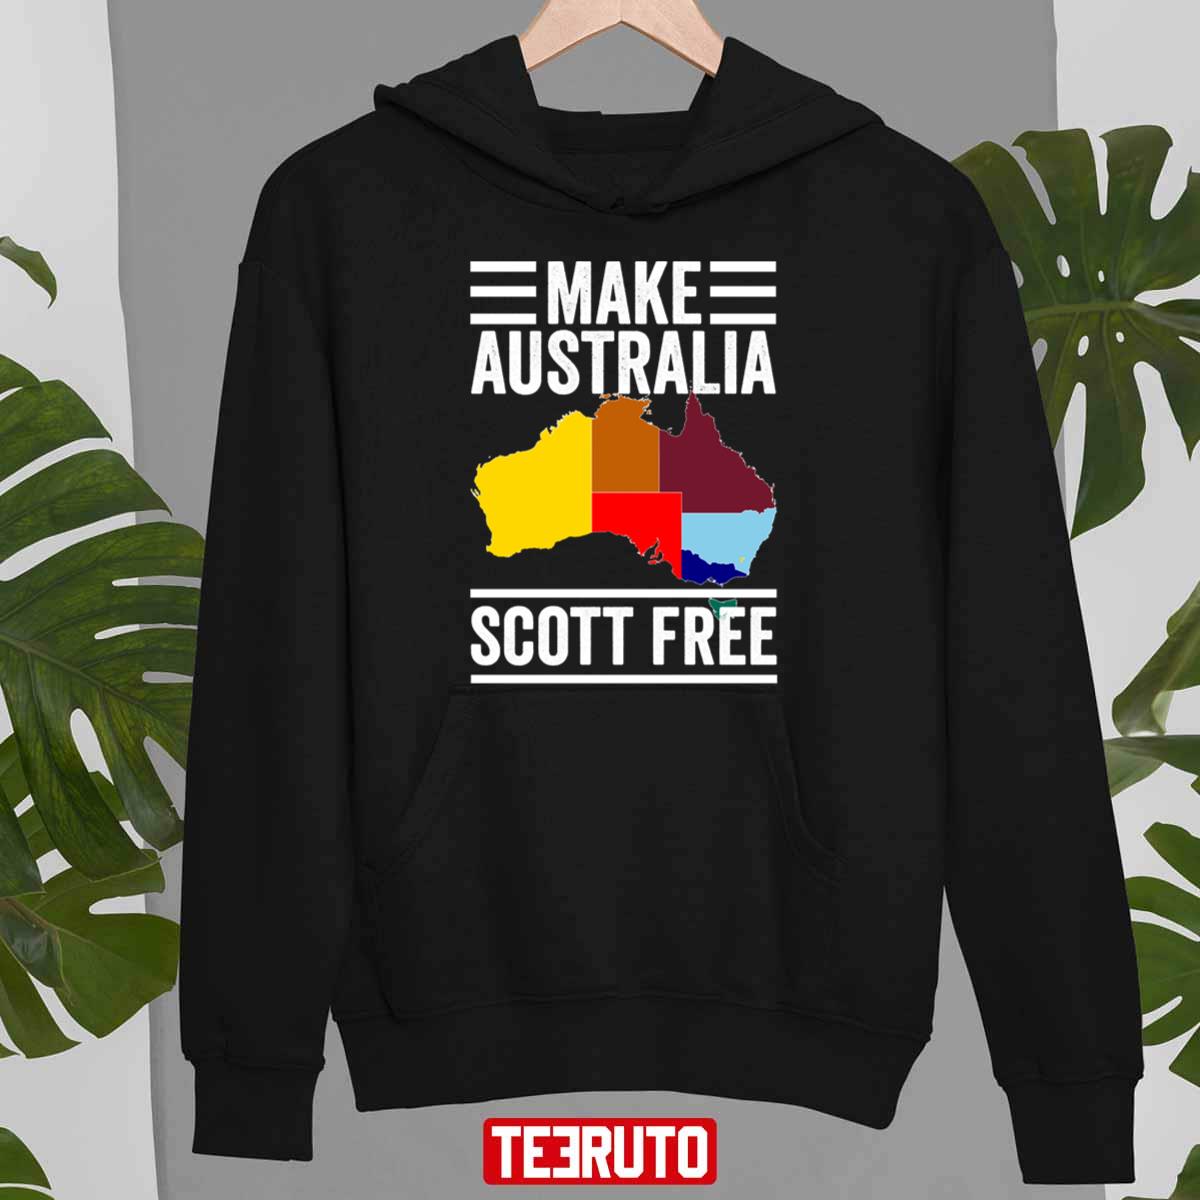 Make Australia Scott Free Unisex T-Shirt